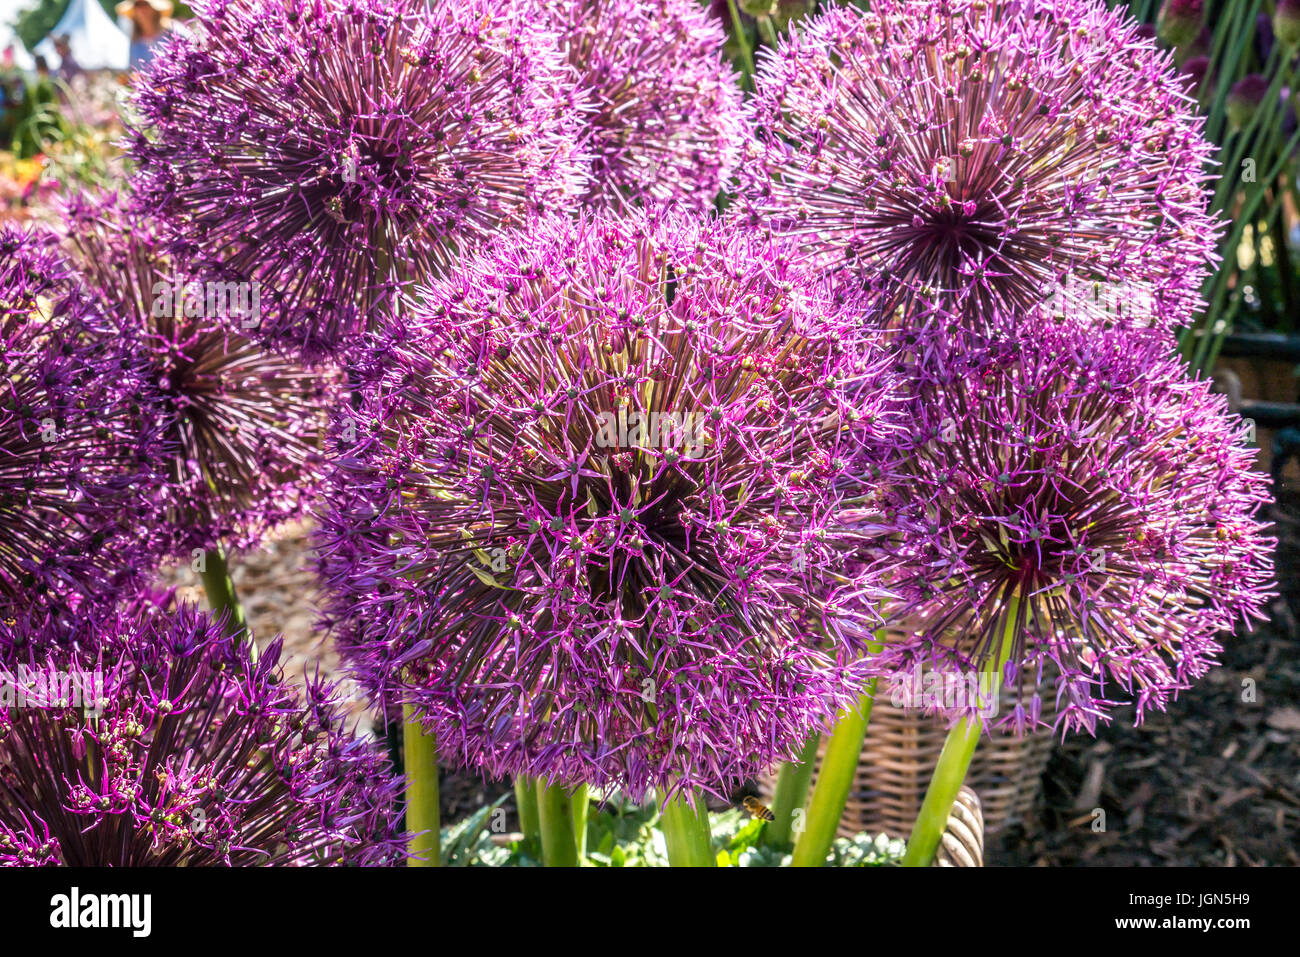 Close up of Allium Purple giant flowers, Allium giganteum, common name giant onion in sunshine Stock Photo